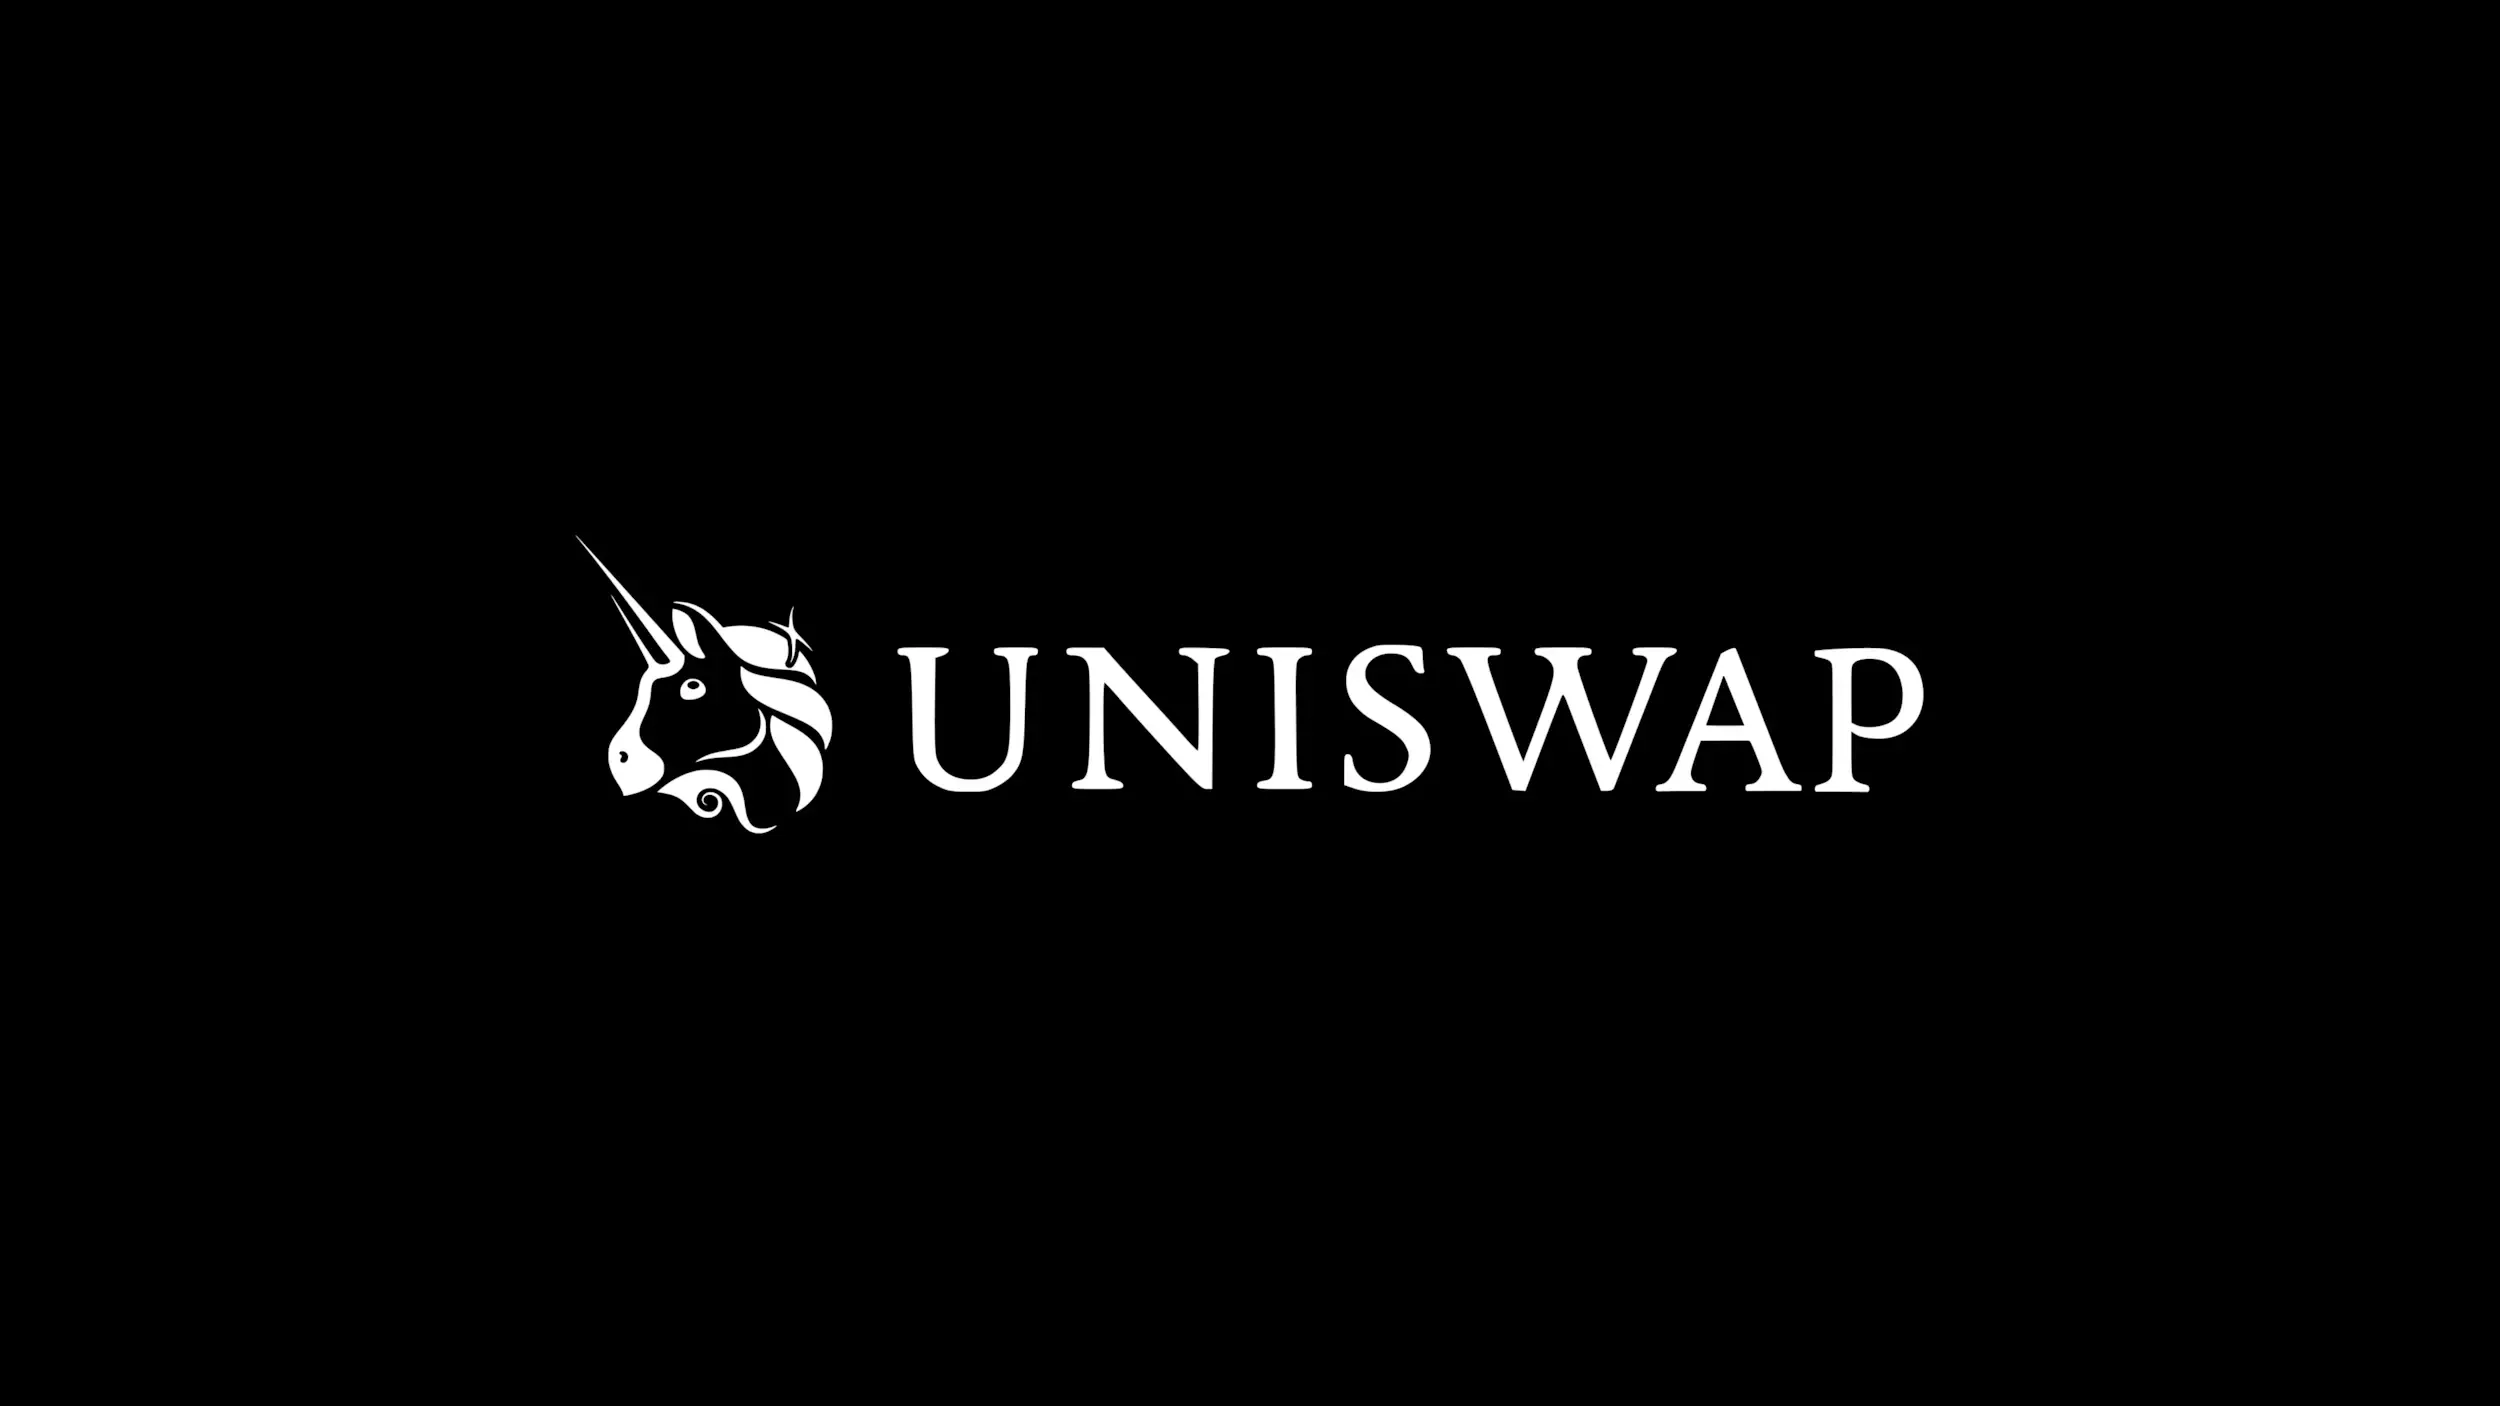 SEC 预诉 Uniswap：Web3 的核心价值和 Cyberspace 的意识形态之争